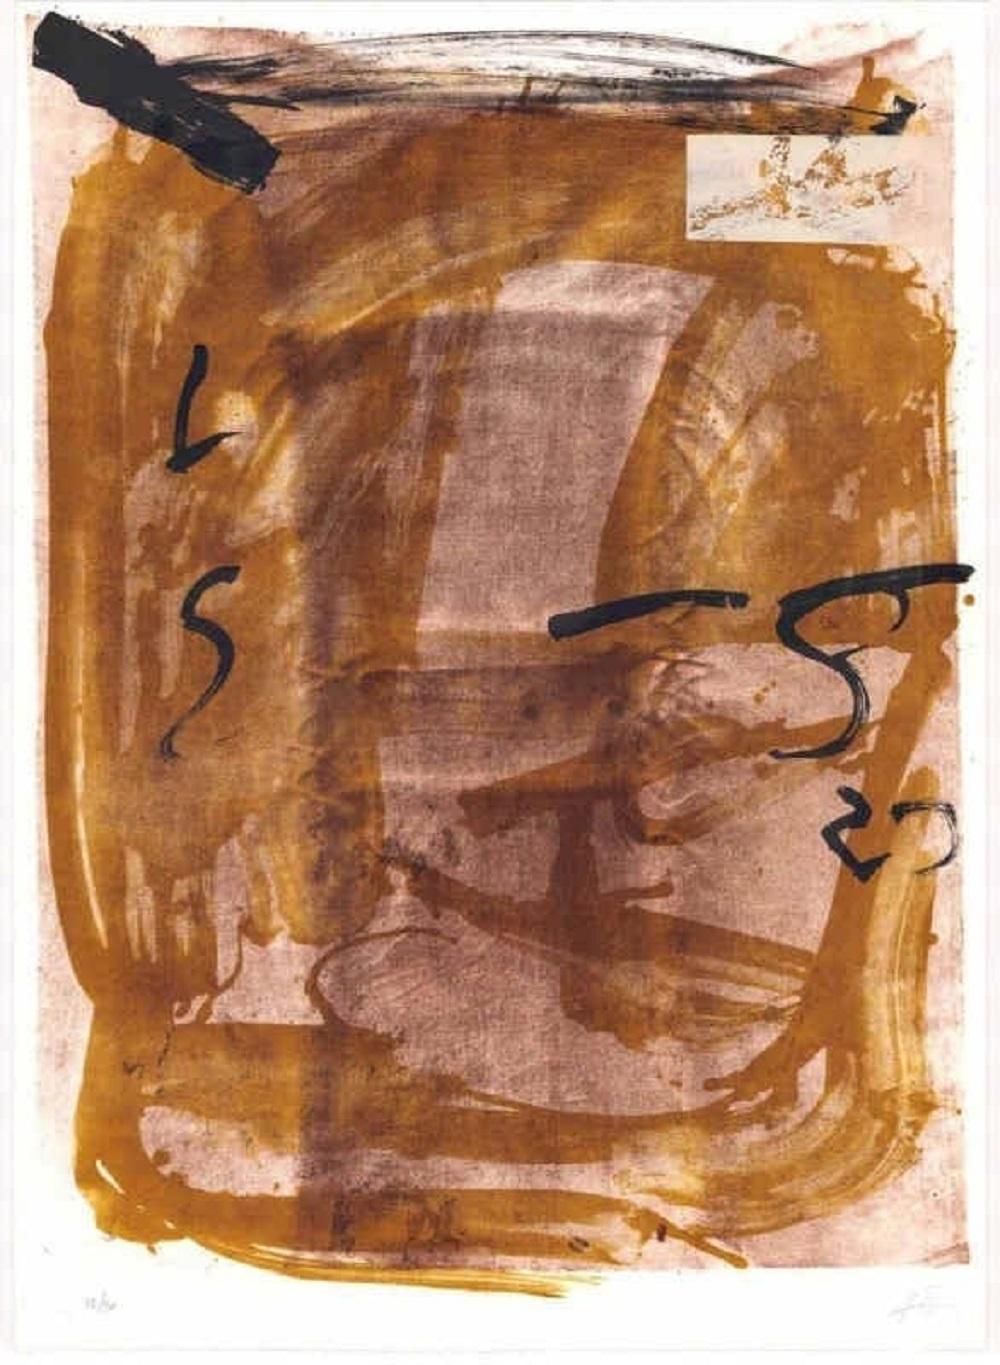 Lithographie d'artiste espagnol signée, édition limitée, numérotée n31 - Print de Antoni Tàpies